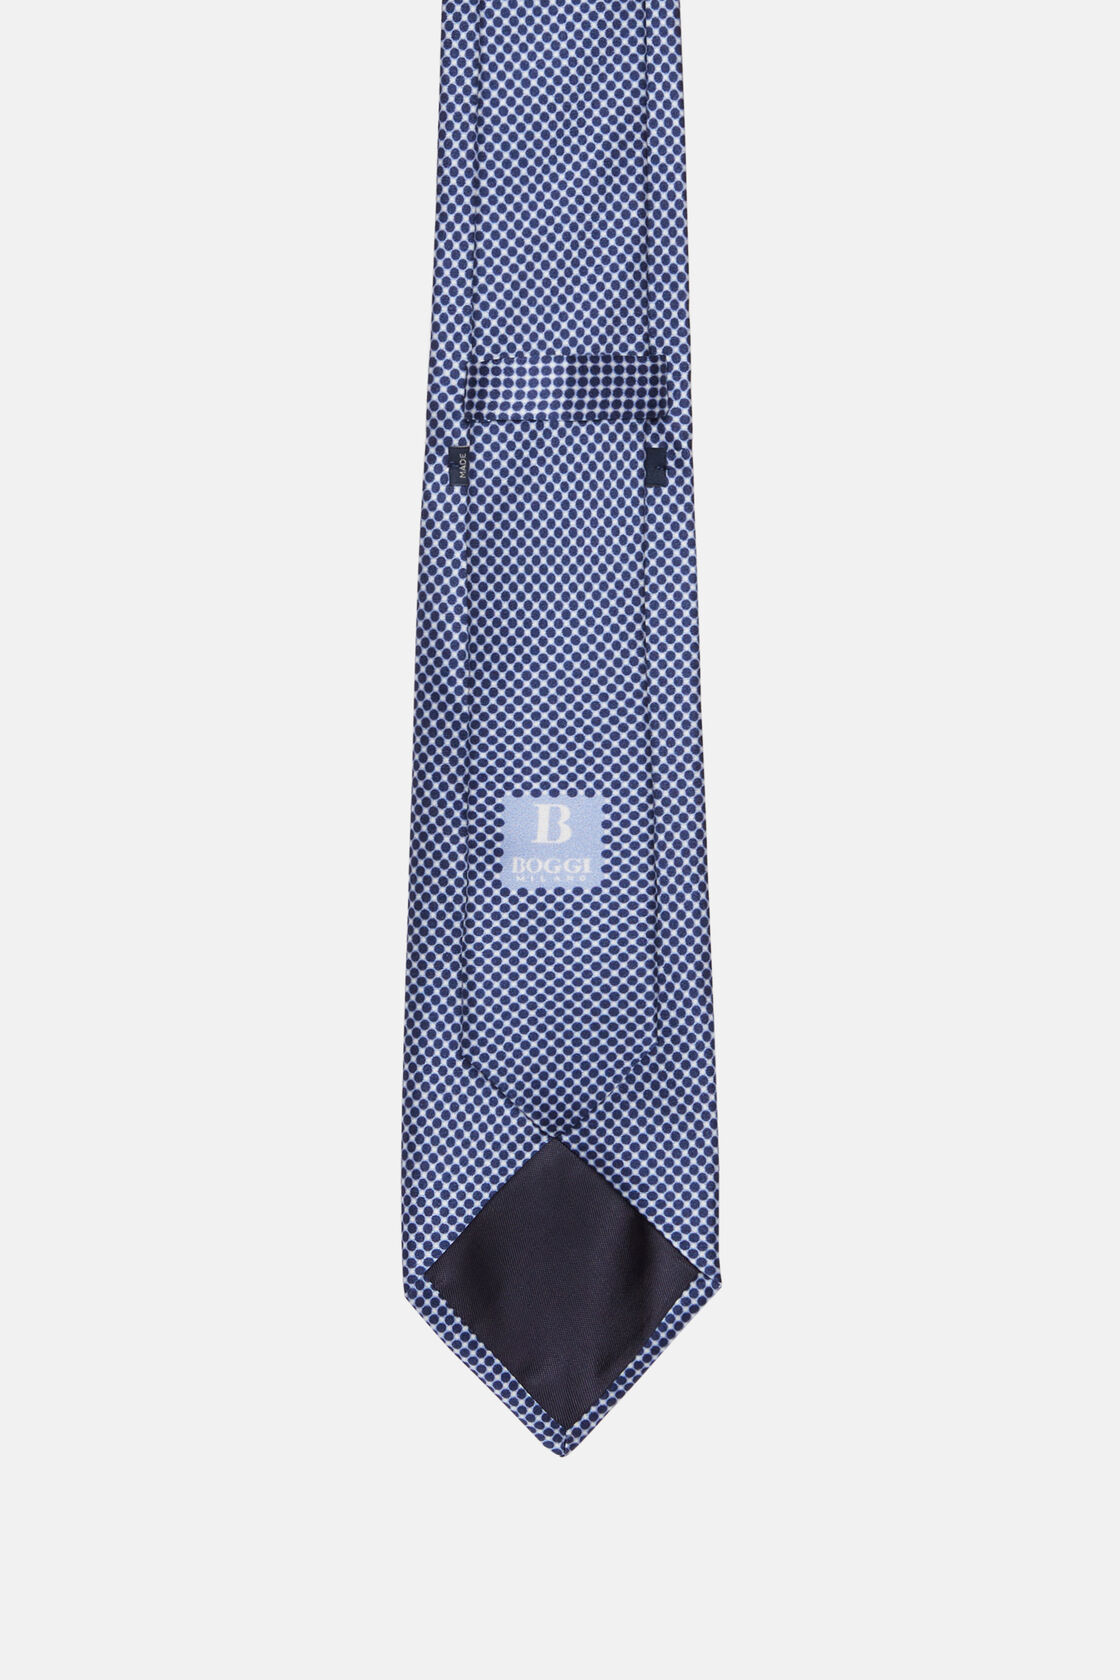 Cravate De Cérémonie Imprimée En Soie, bleu marine, hi-res